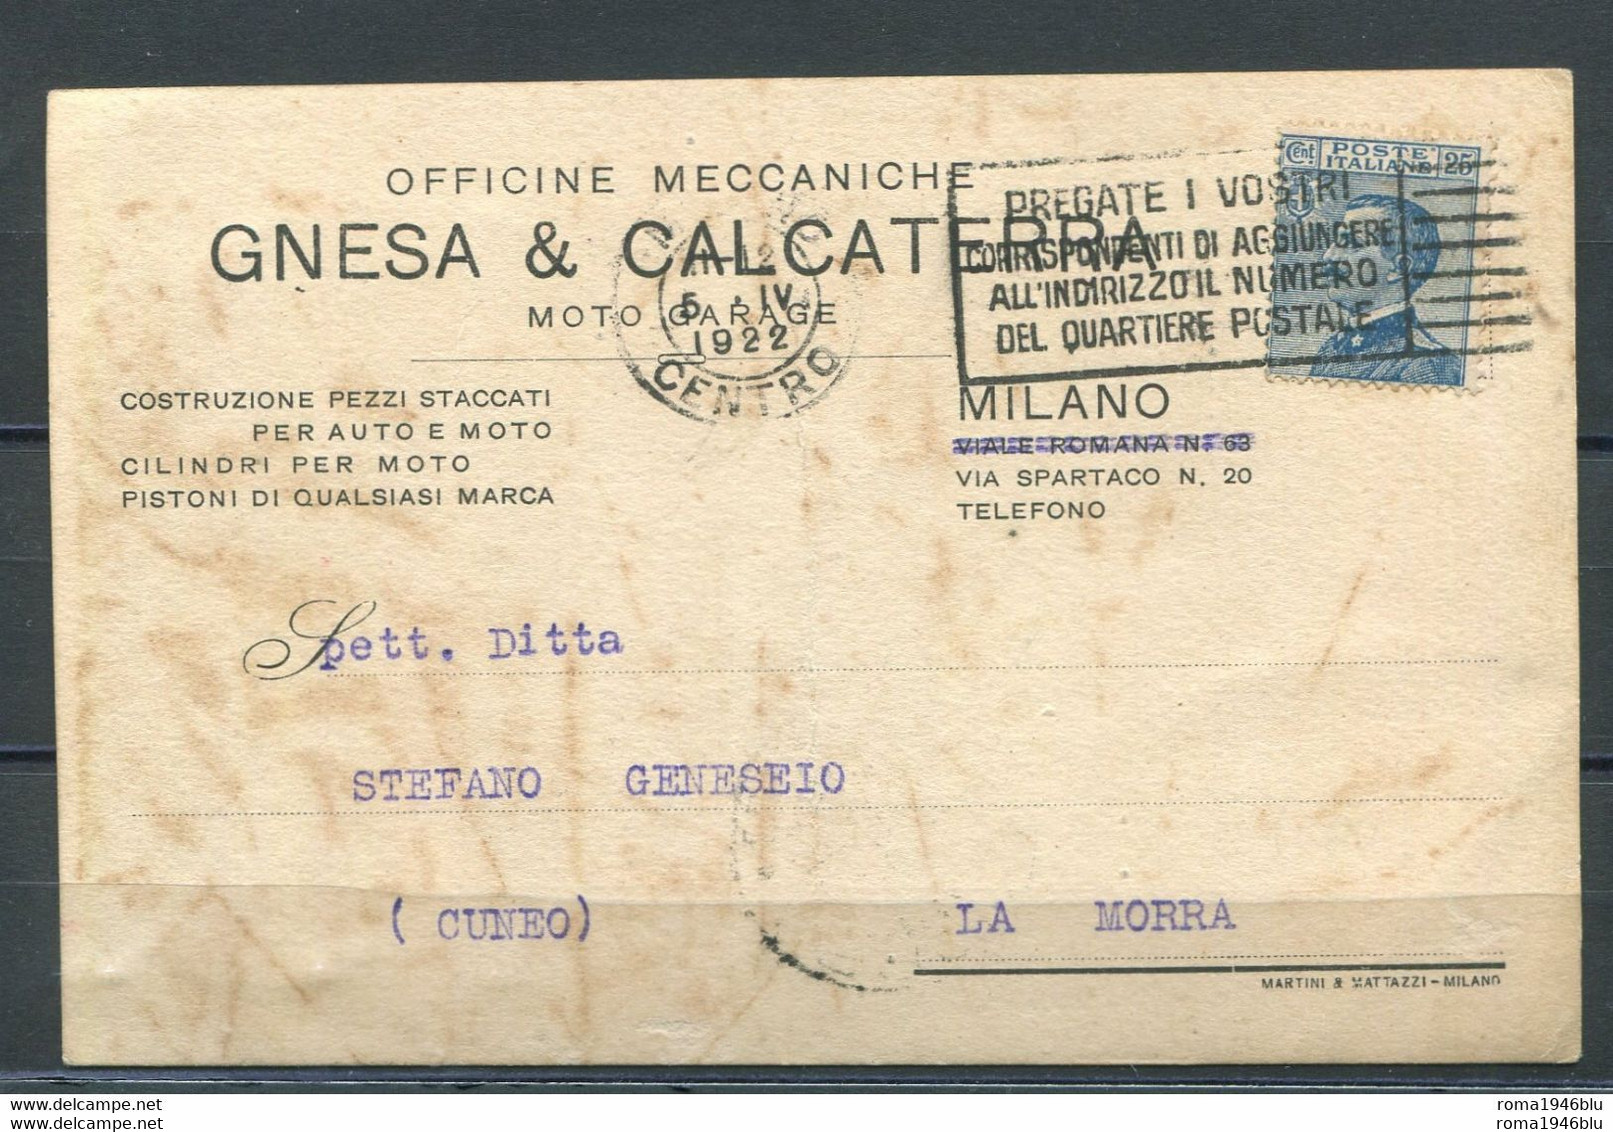 CARTOLINA PUBBLICITARIA OFFICINE MECCANICHE GNESA & CALCATERRA MILANO - Advertising